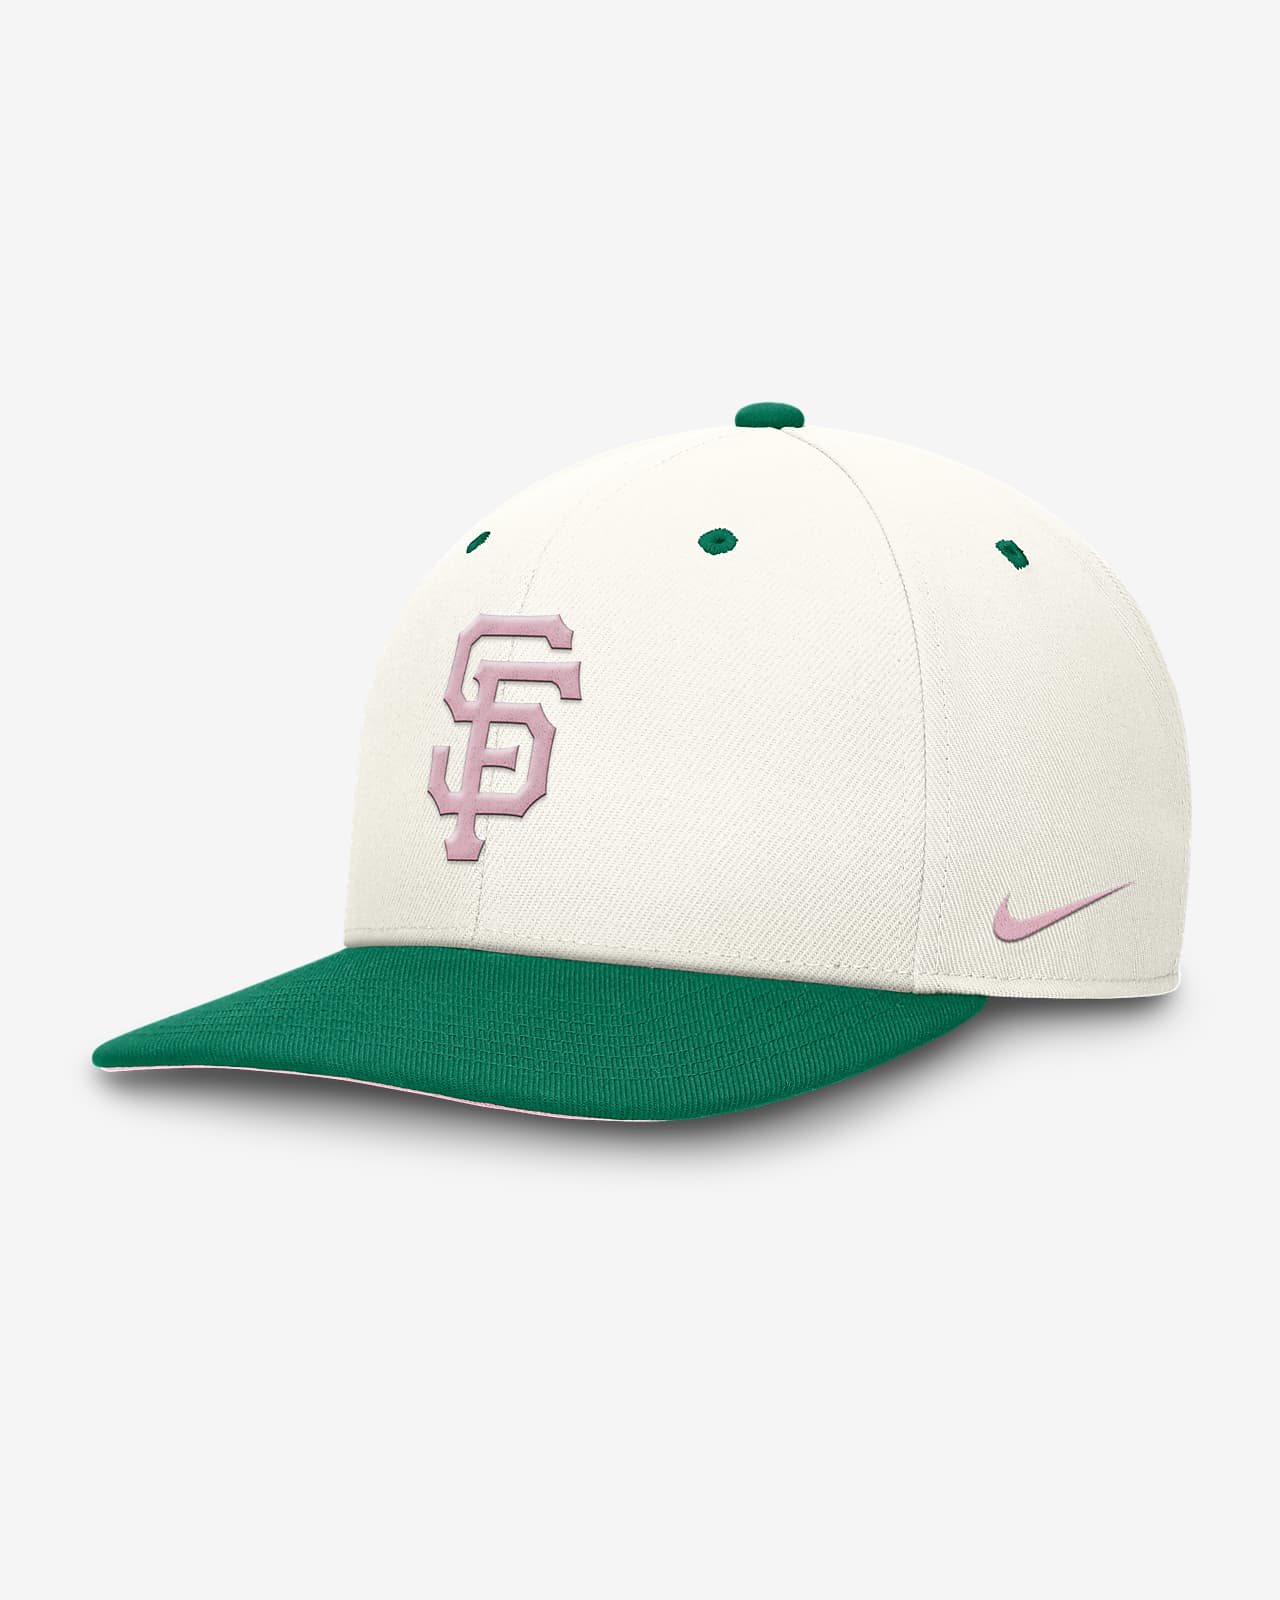 Gorra Nike Dri-FIT de la MLB ajustable para hombre San Francisco Giants Sail Pro